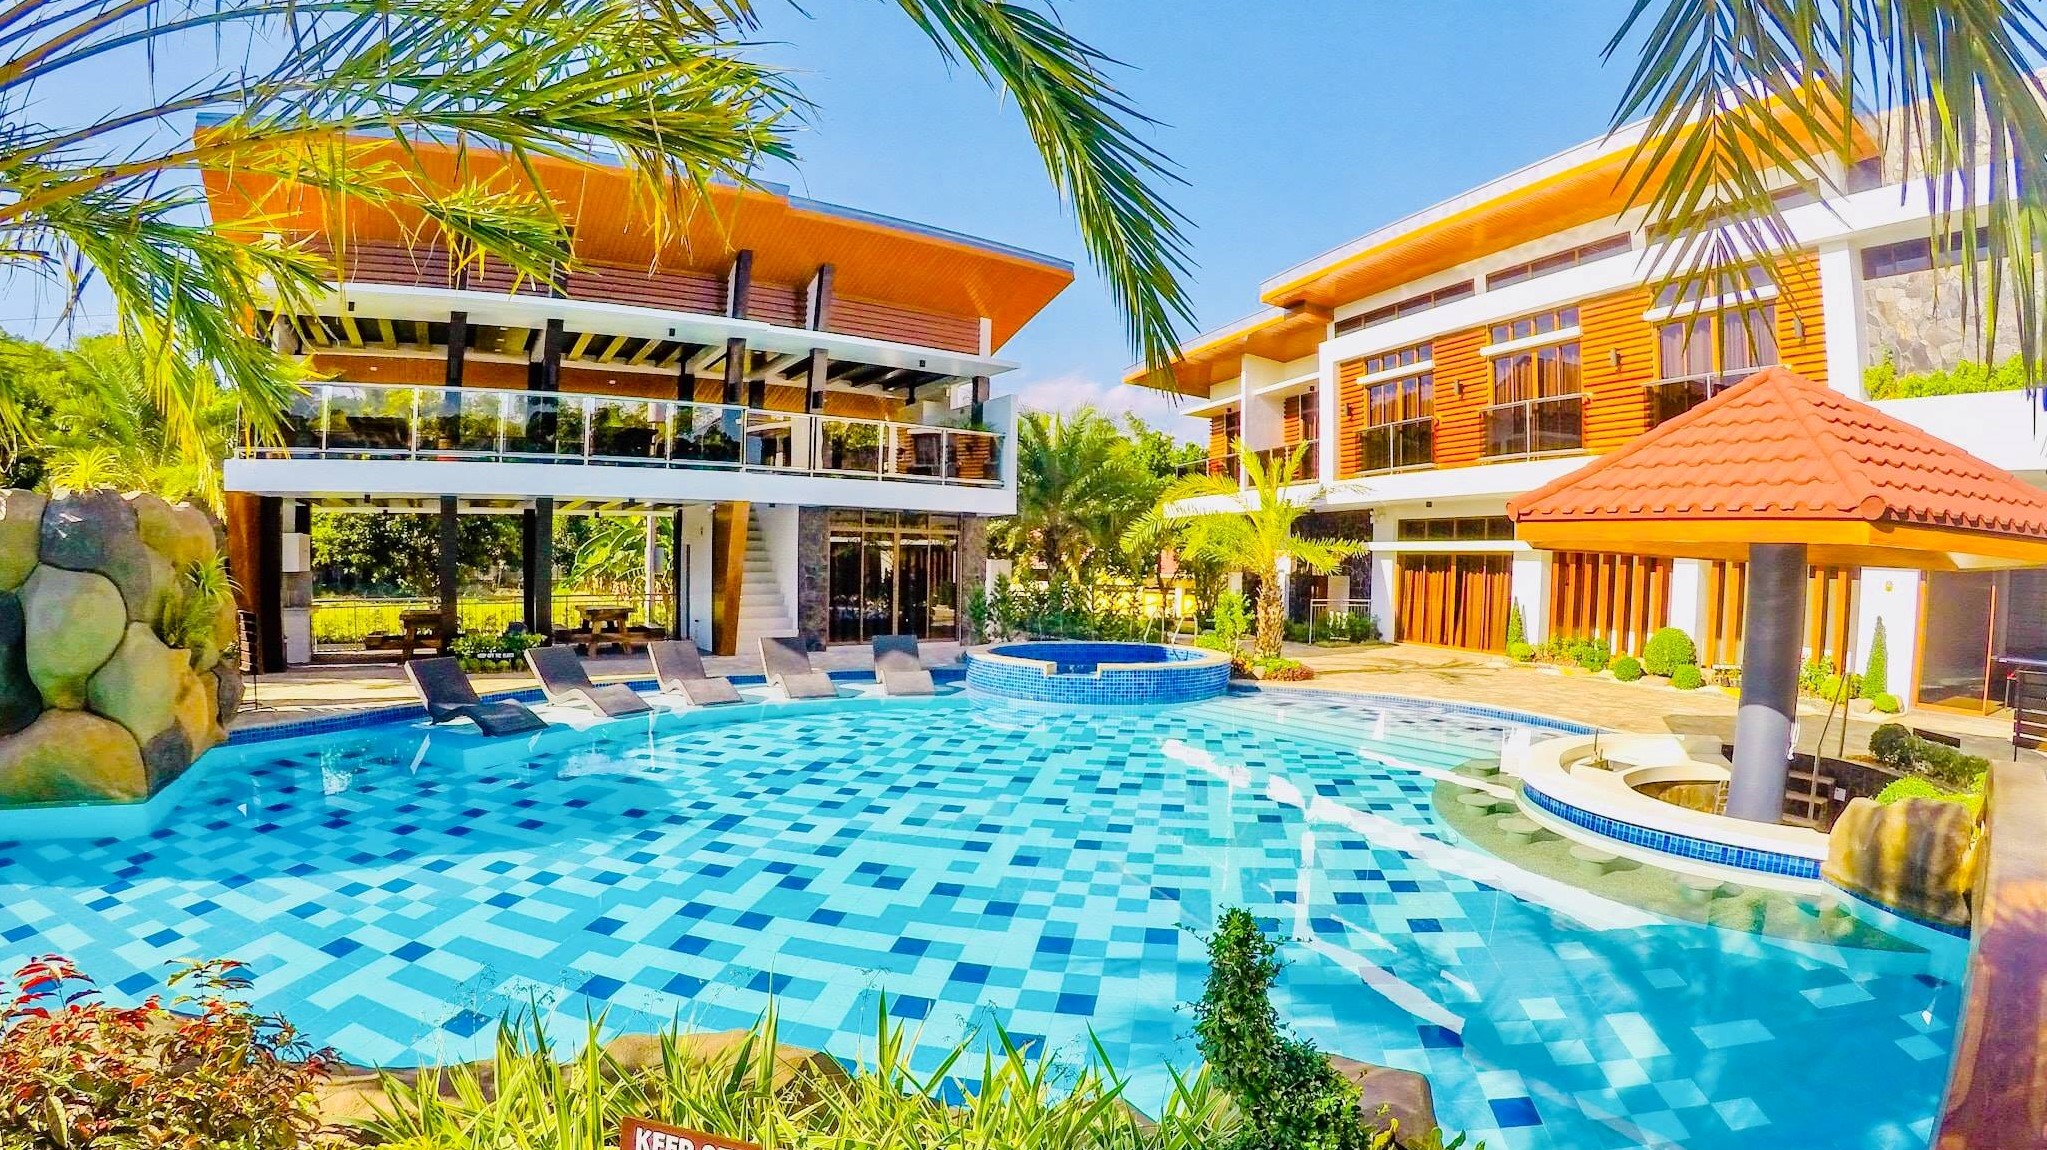 10 Best Budget-Friendly Quality Resorts Near Manila: Batangas, Zambales, La Union, Bataan